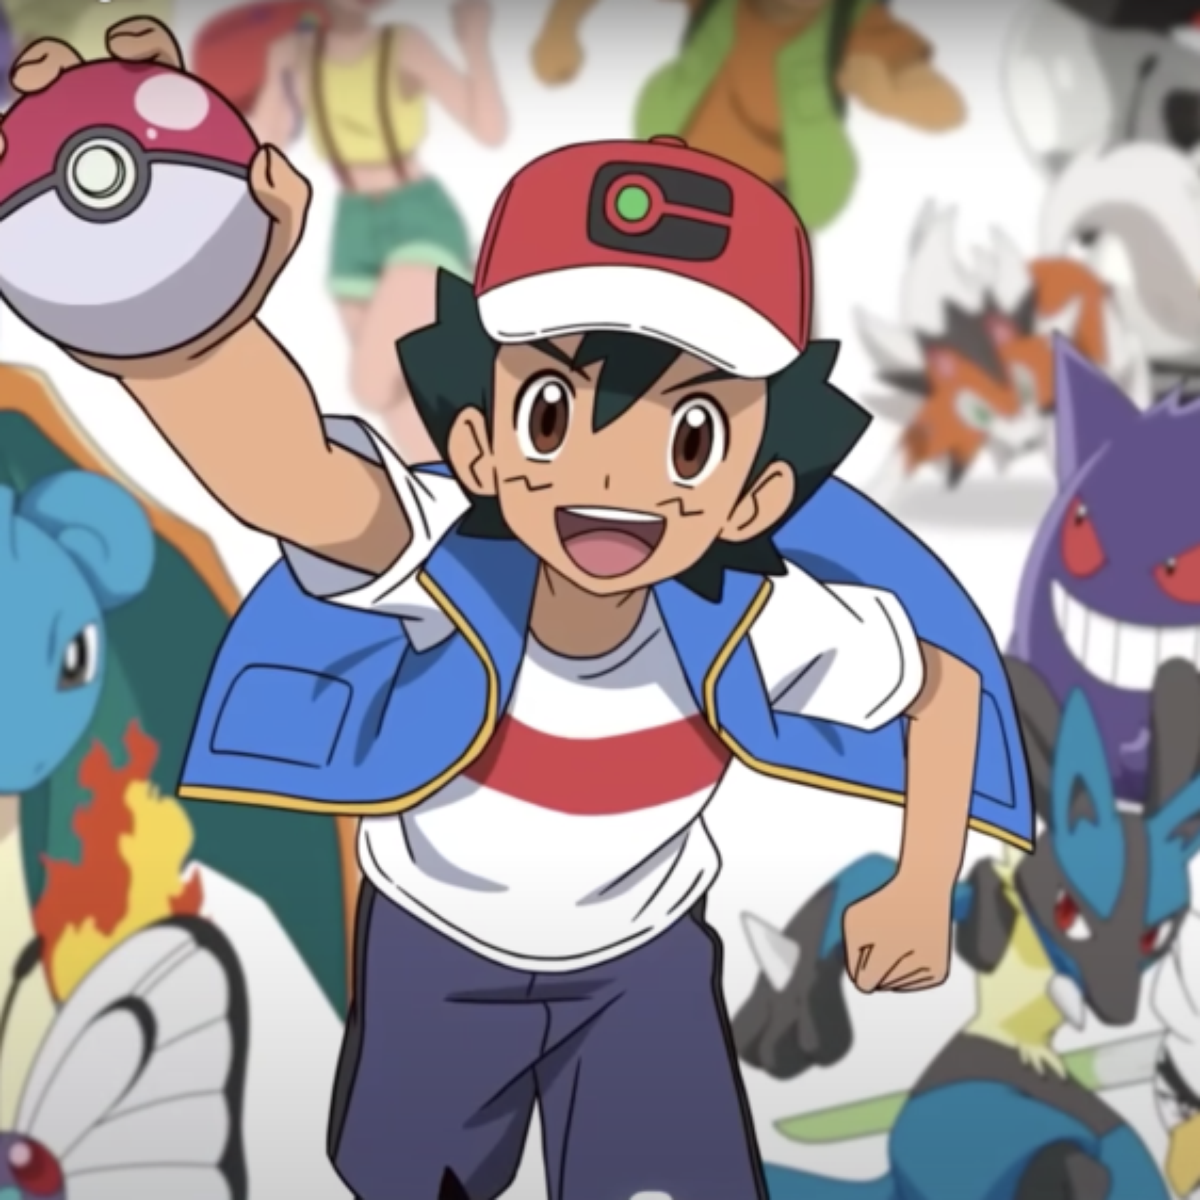 Pokémon terá novo anime com monstrinhos de todas as gerações